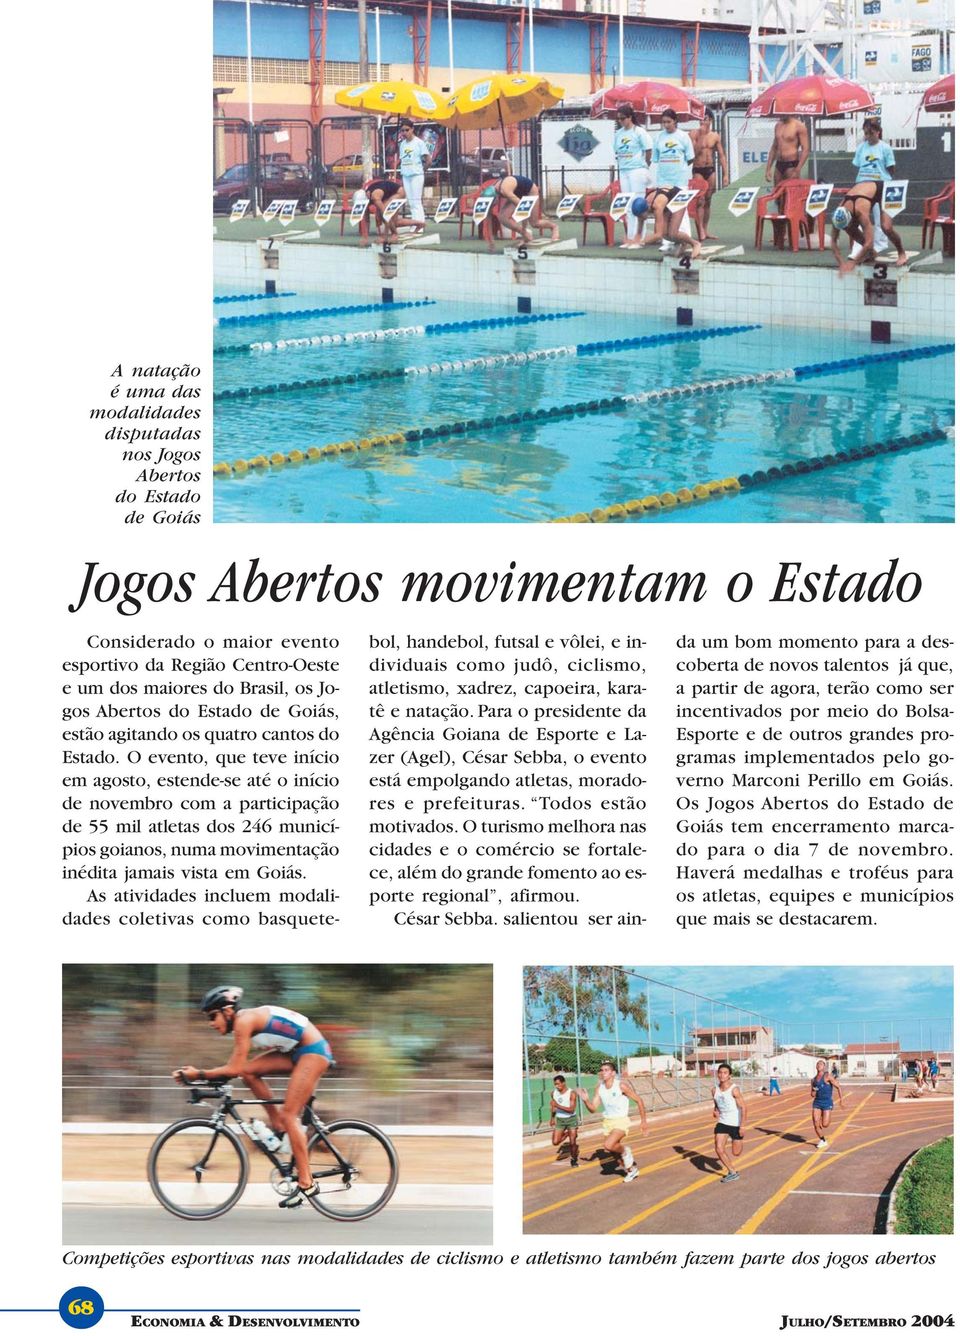 O evento, que teve início em agosto, estende-se até o início de novembro com a participação de 55 mil atletas dos 246 municípios goianos, numa movimentação inédita jamais vista em Goiás.